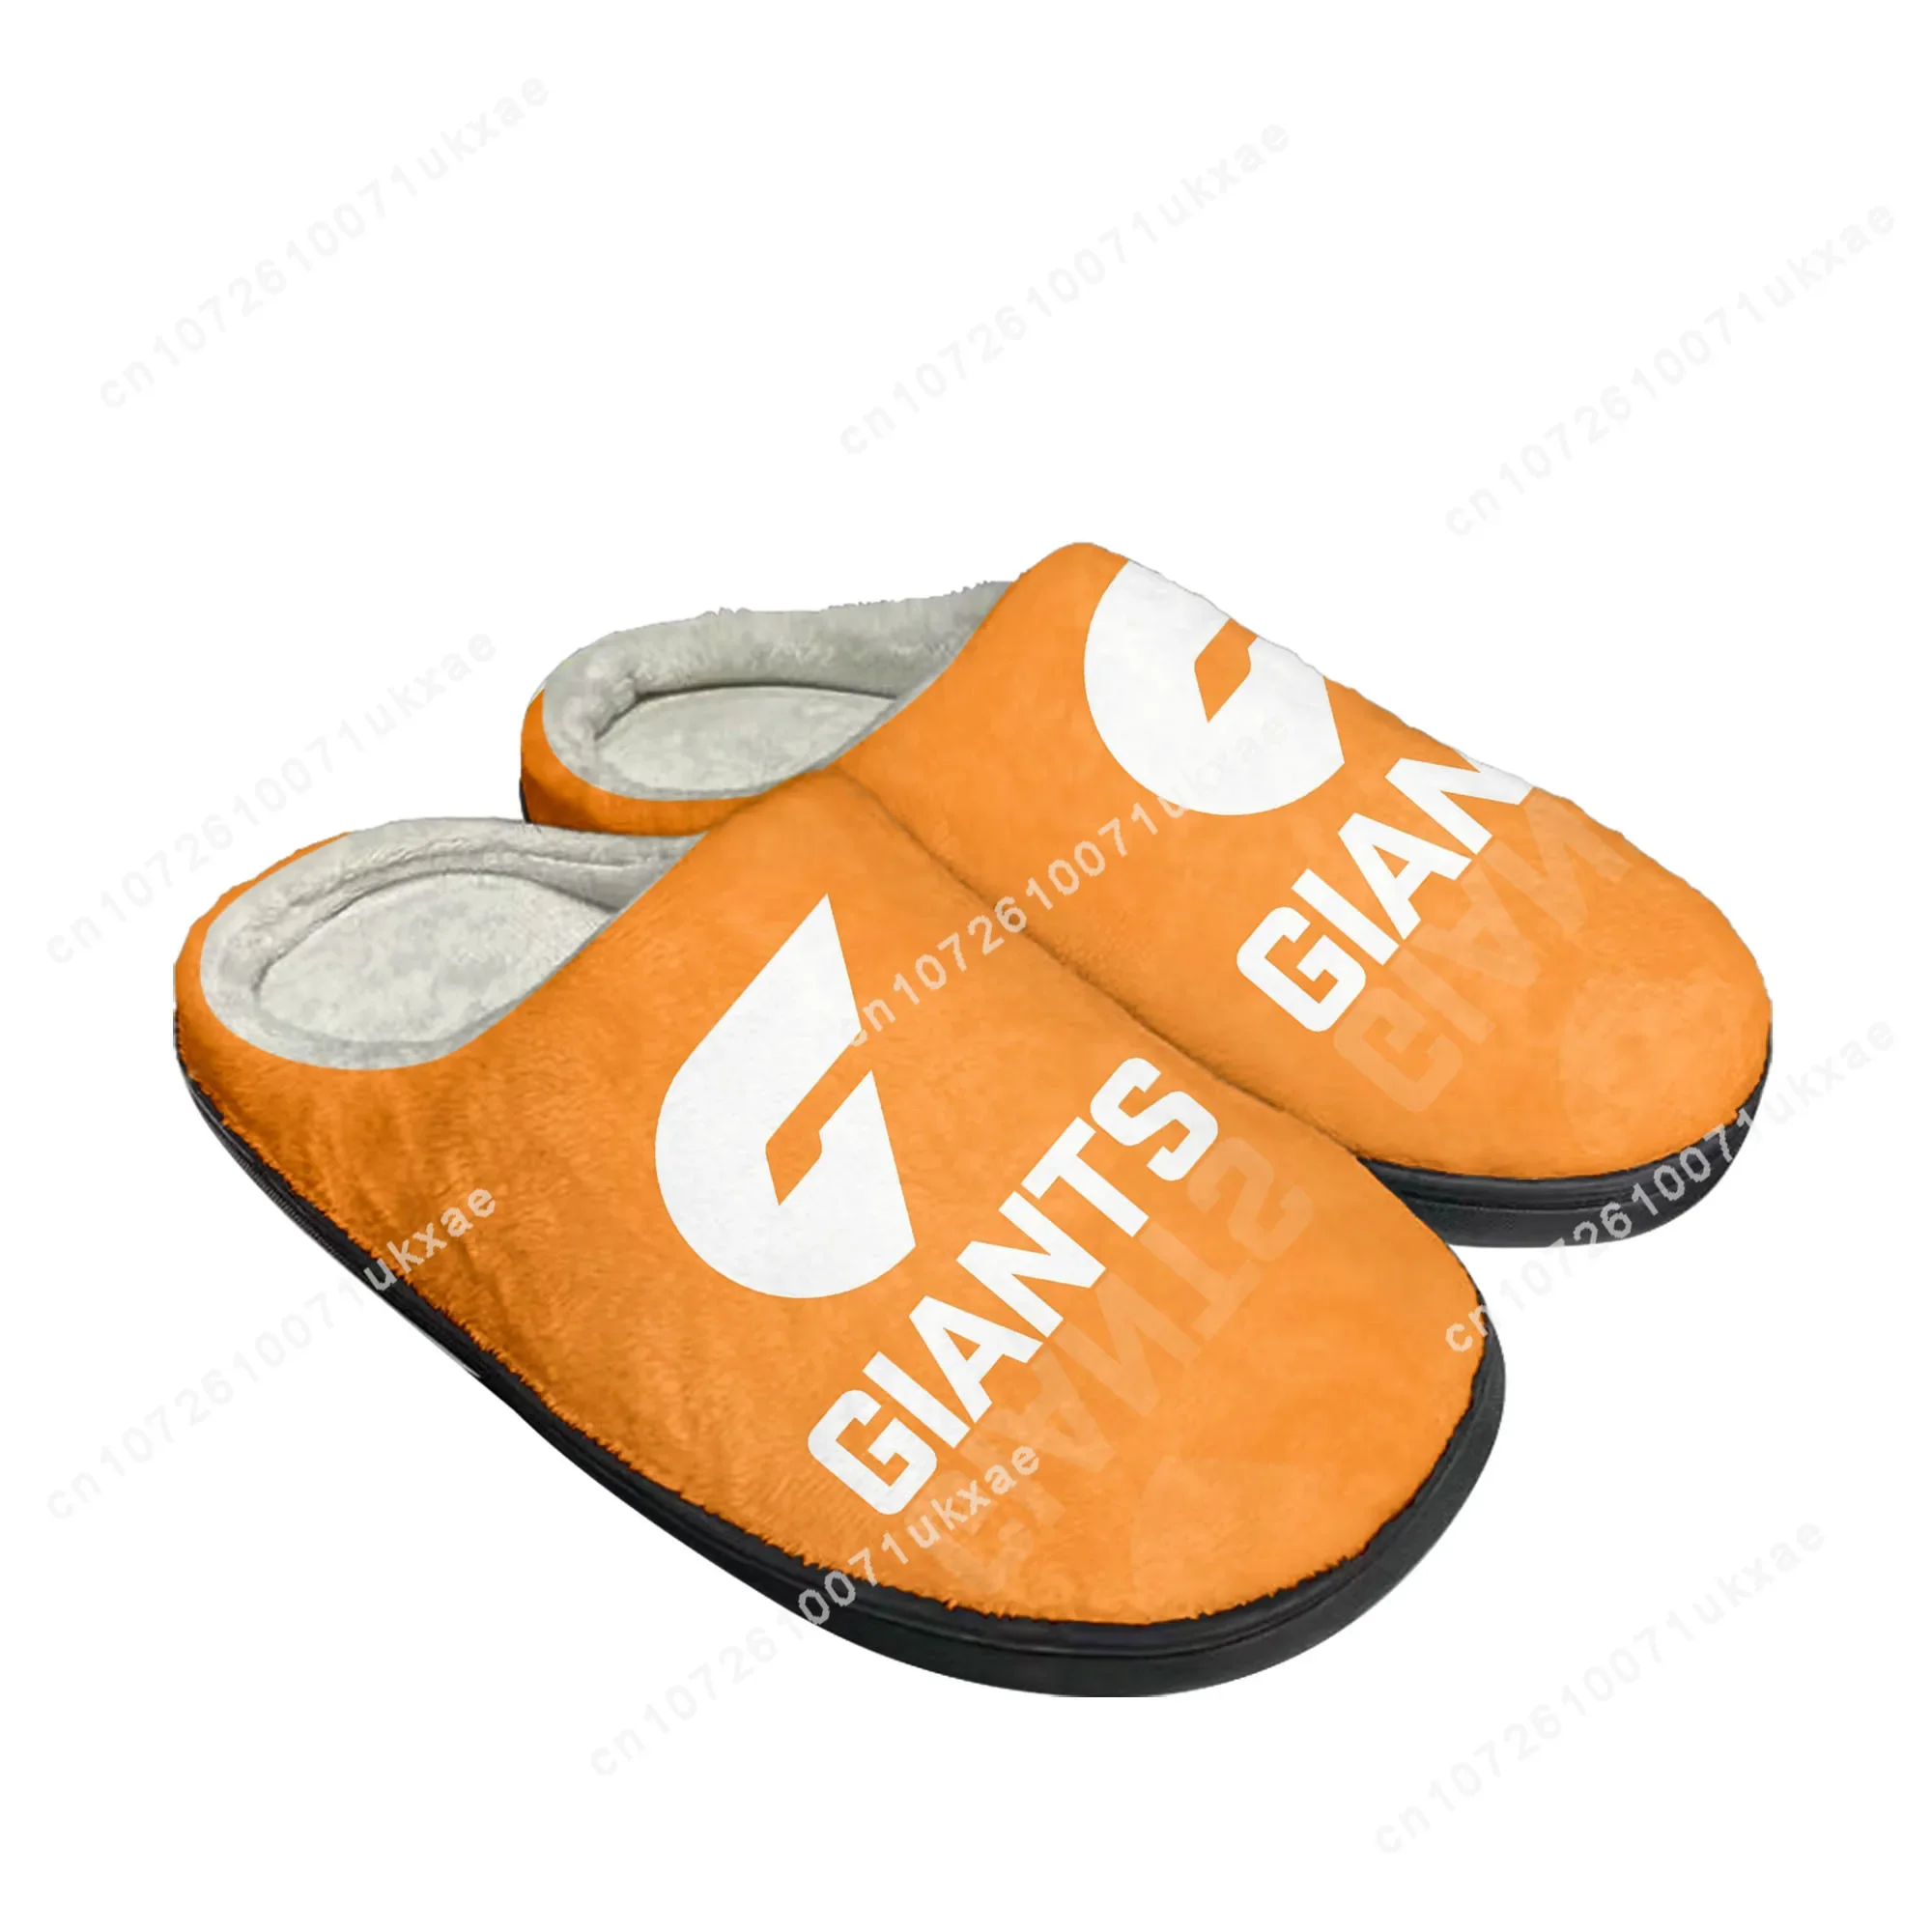 

Большие западные сиднейские австралийские футбольные домашние хлопковые тапочки мужские женские плюшевые теплые туфли для спальни термотапочки обувь на заказ